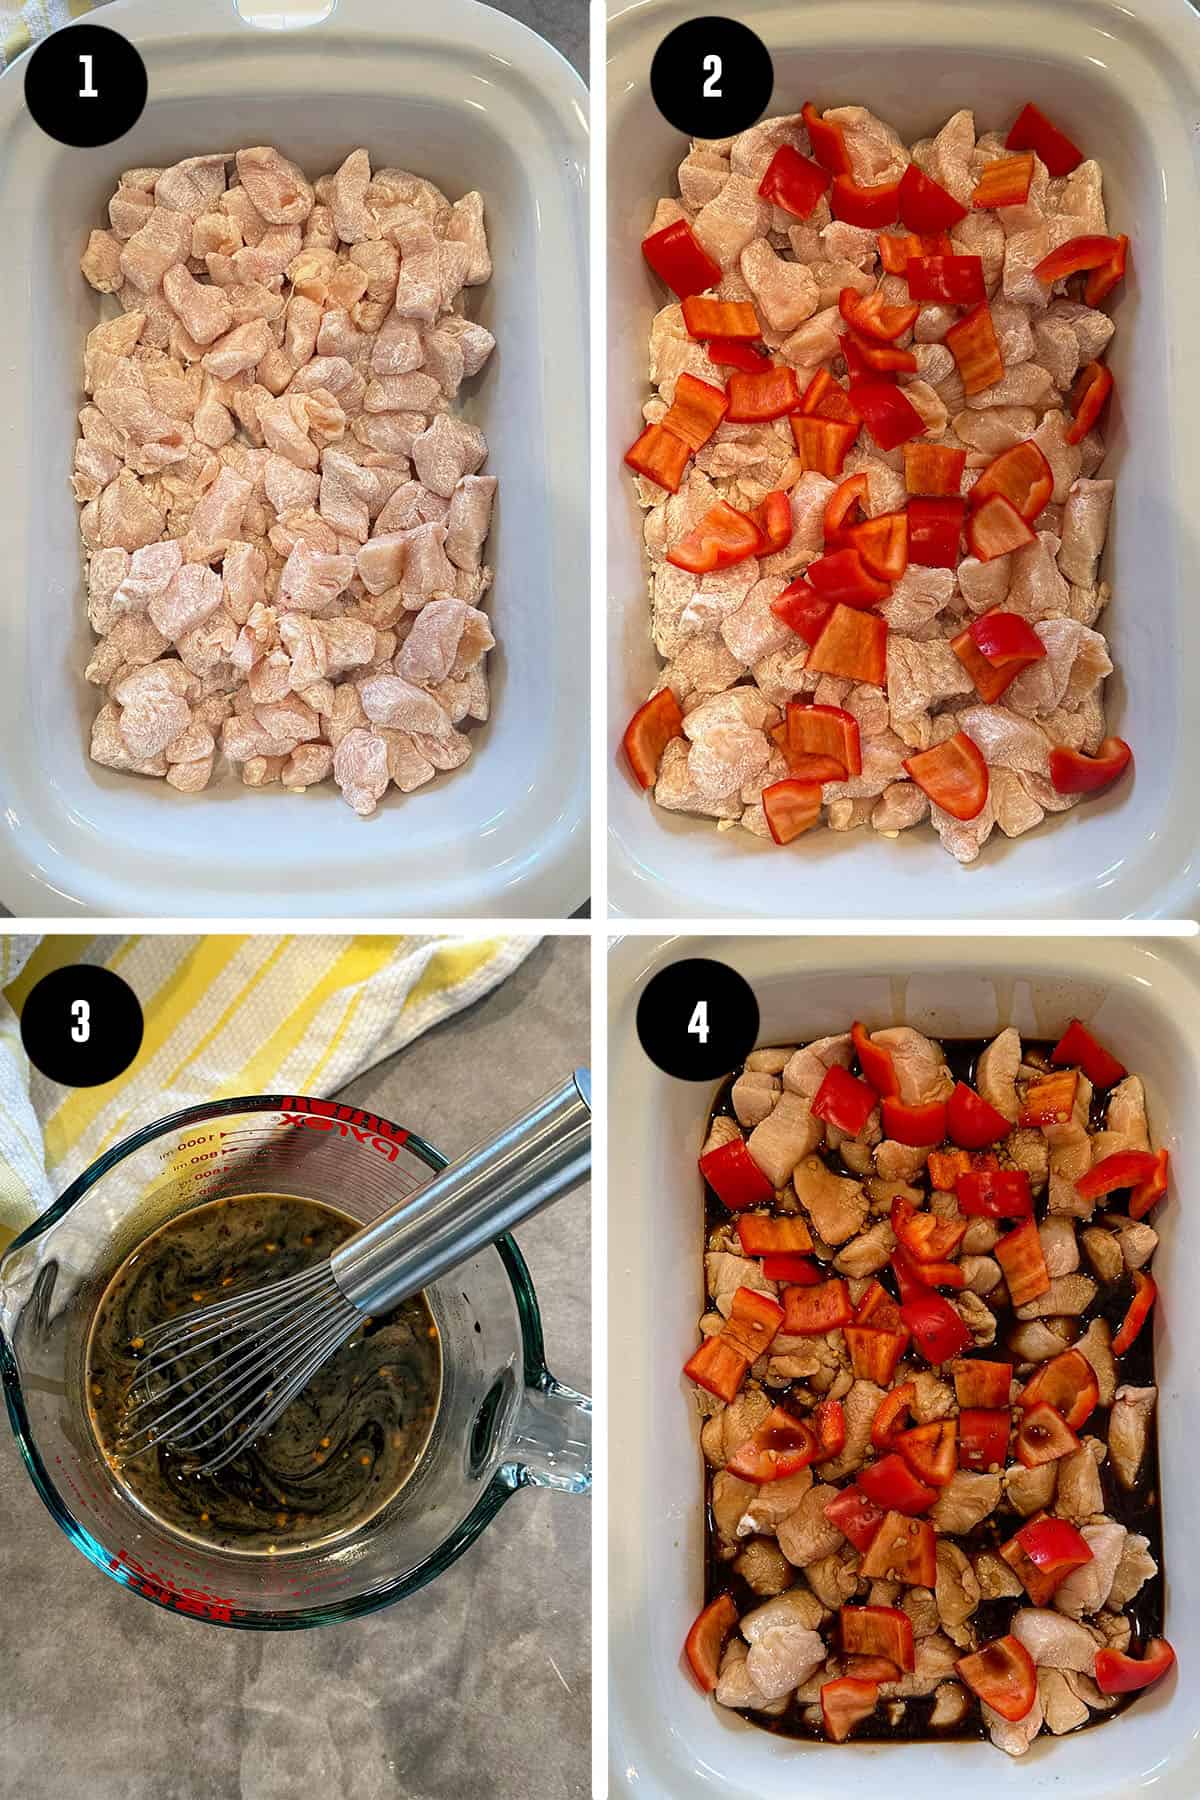 Steps on how to make Crock Pot sesame chicken.